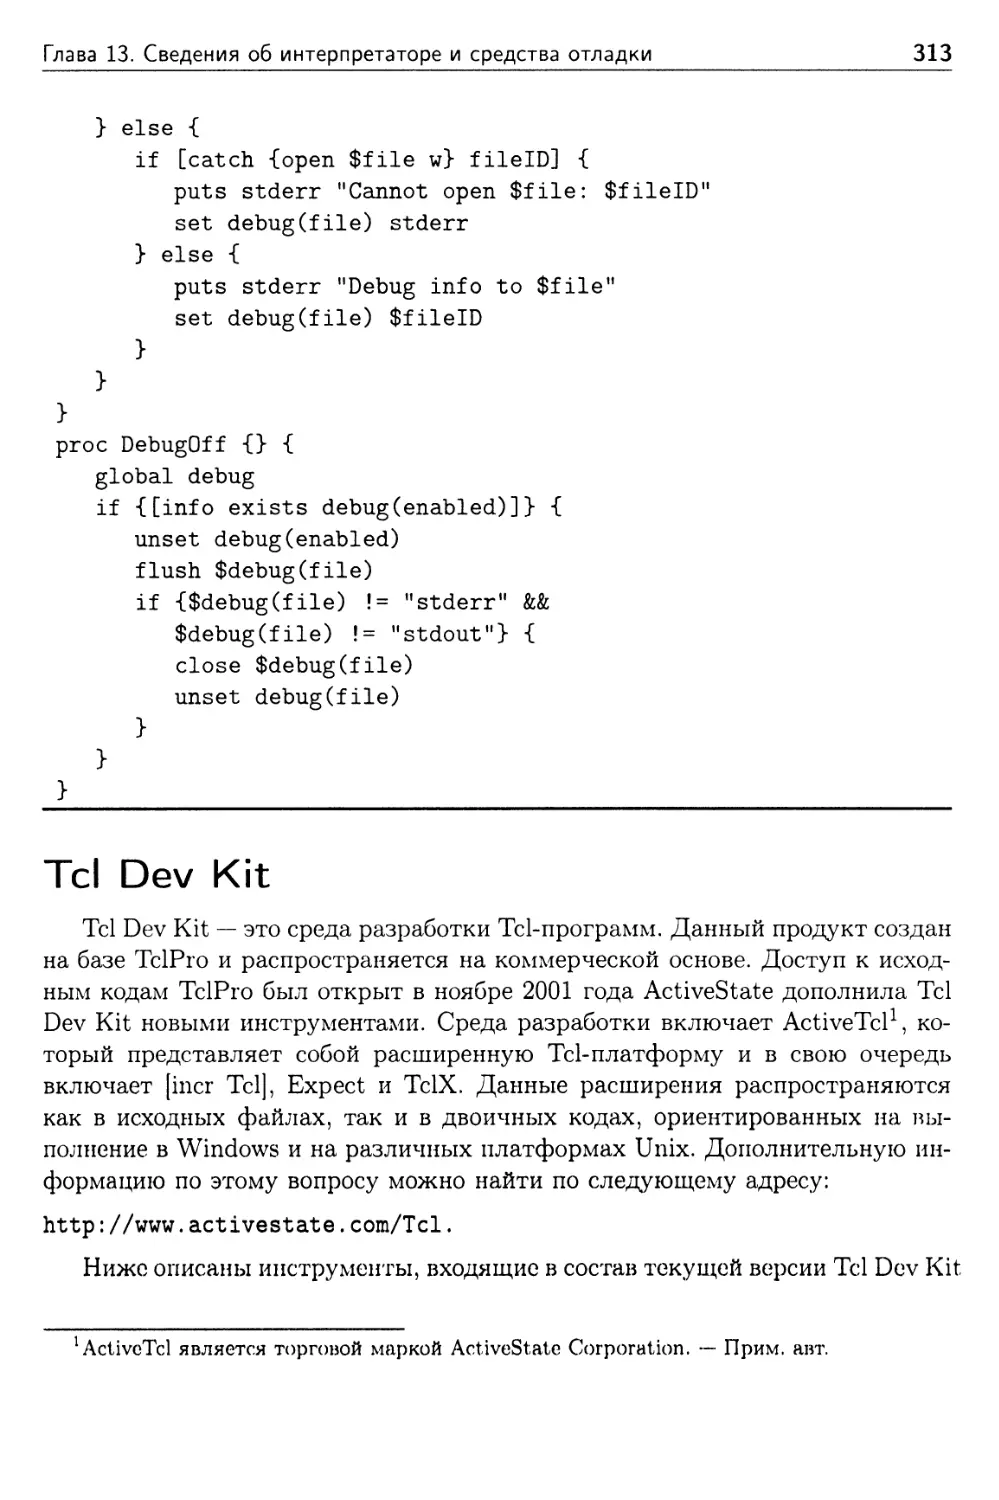 Tcl Dev Kit